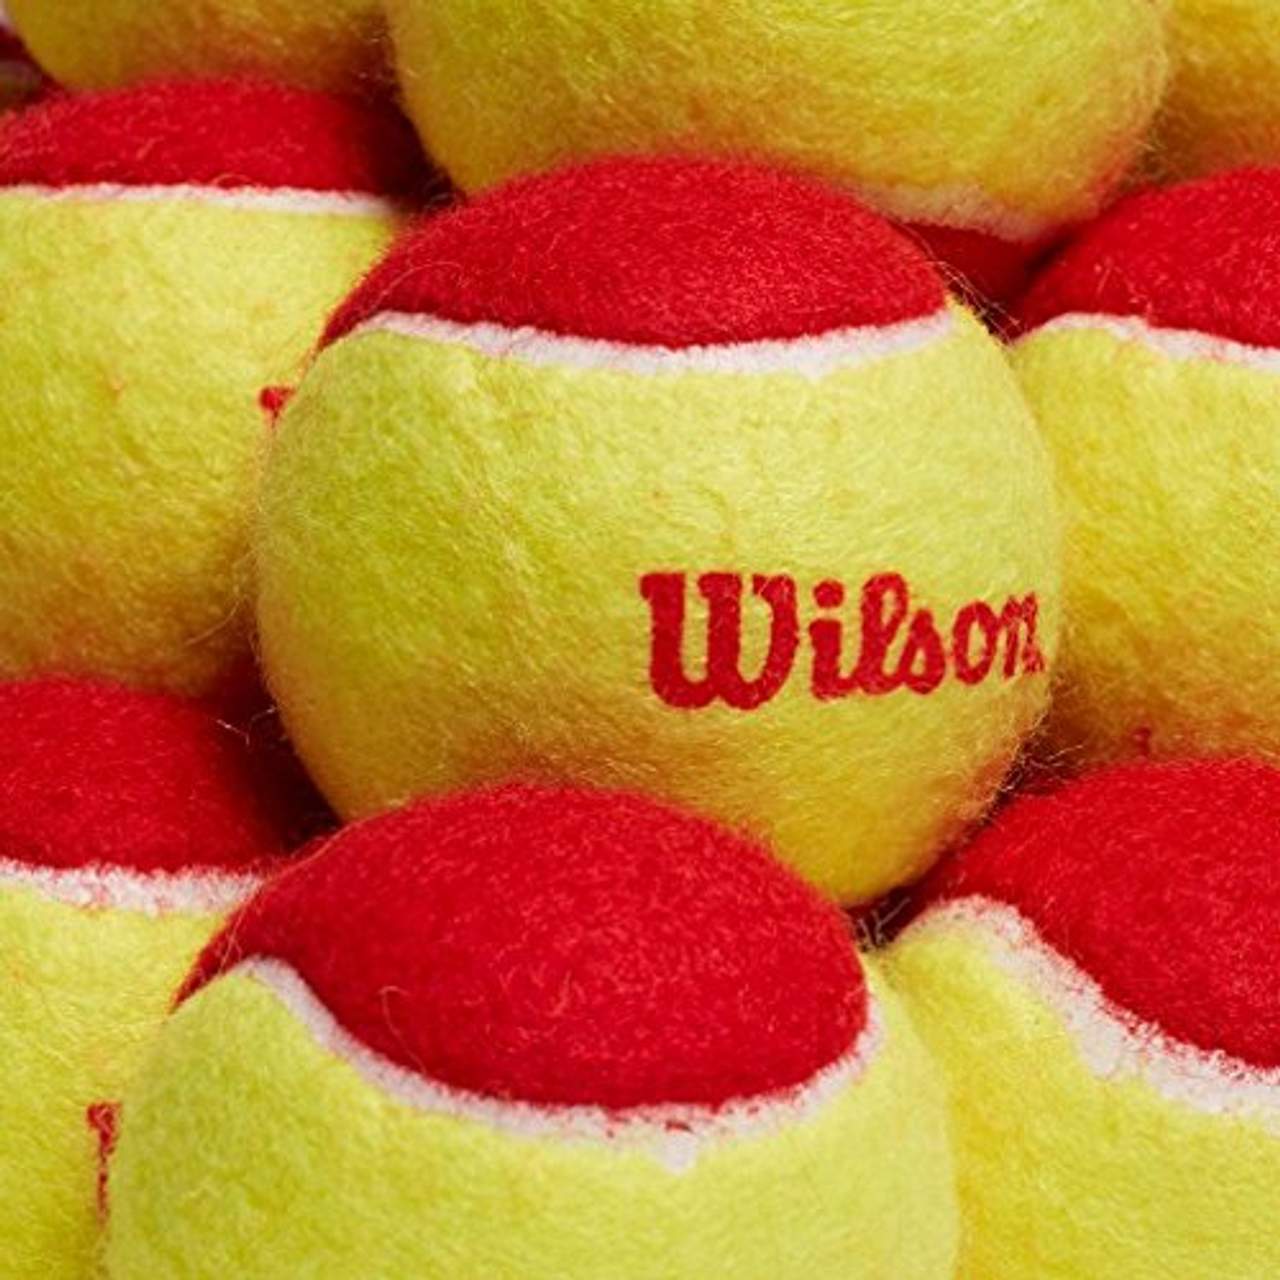 Wilson Tennisbälle Starter Red